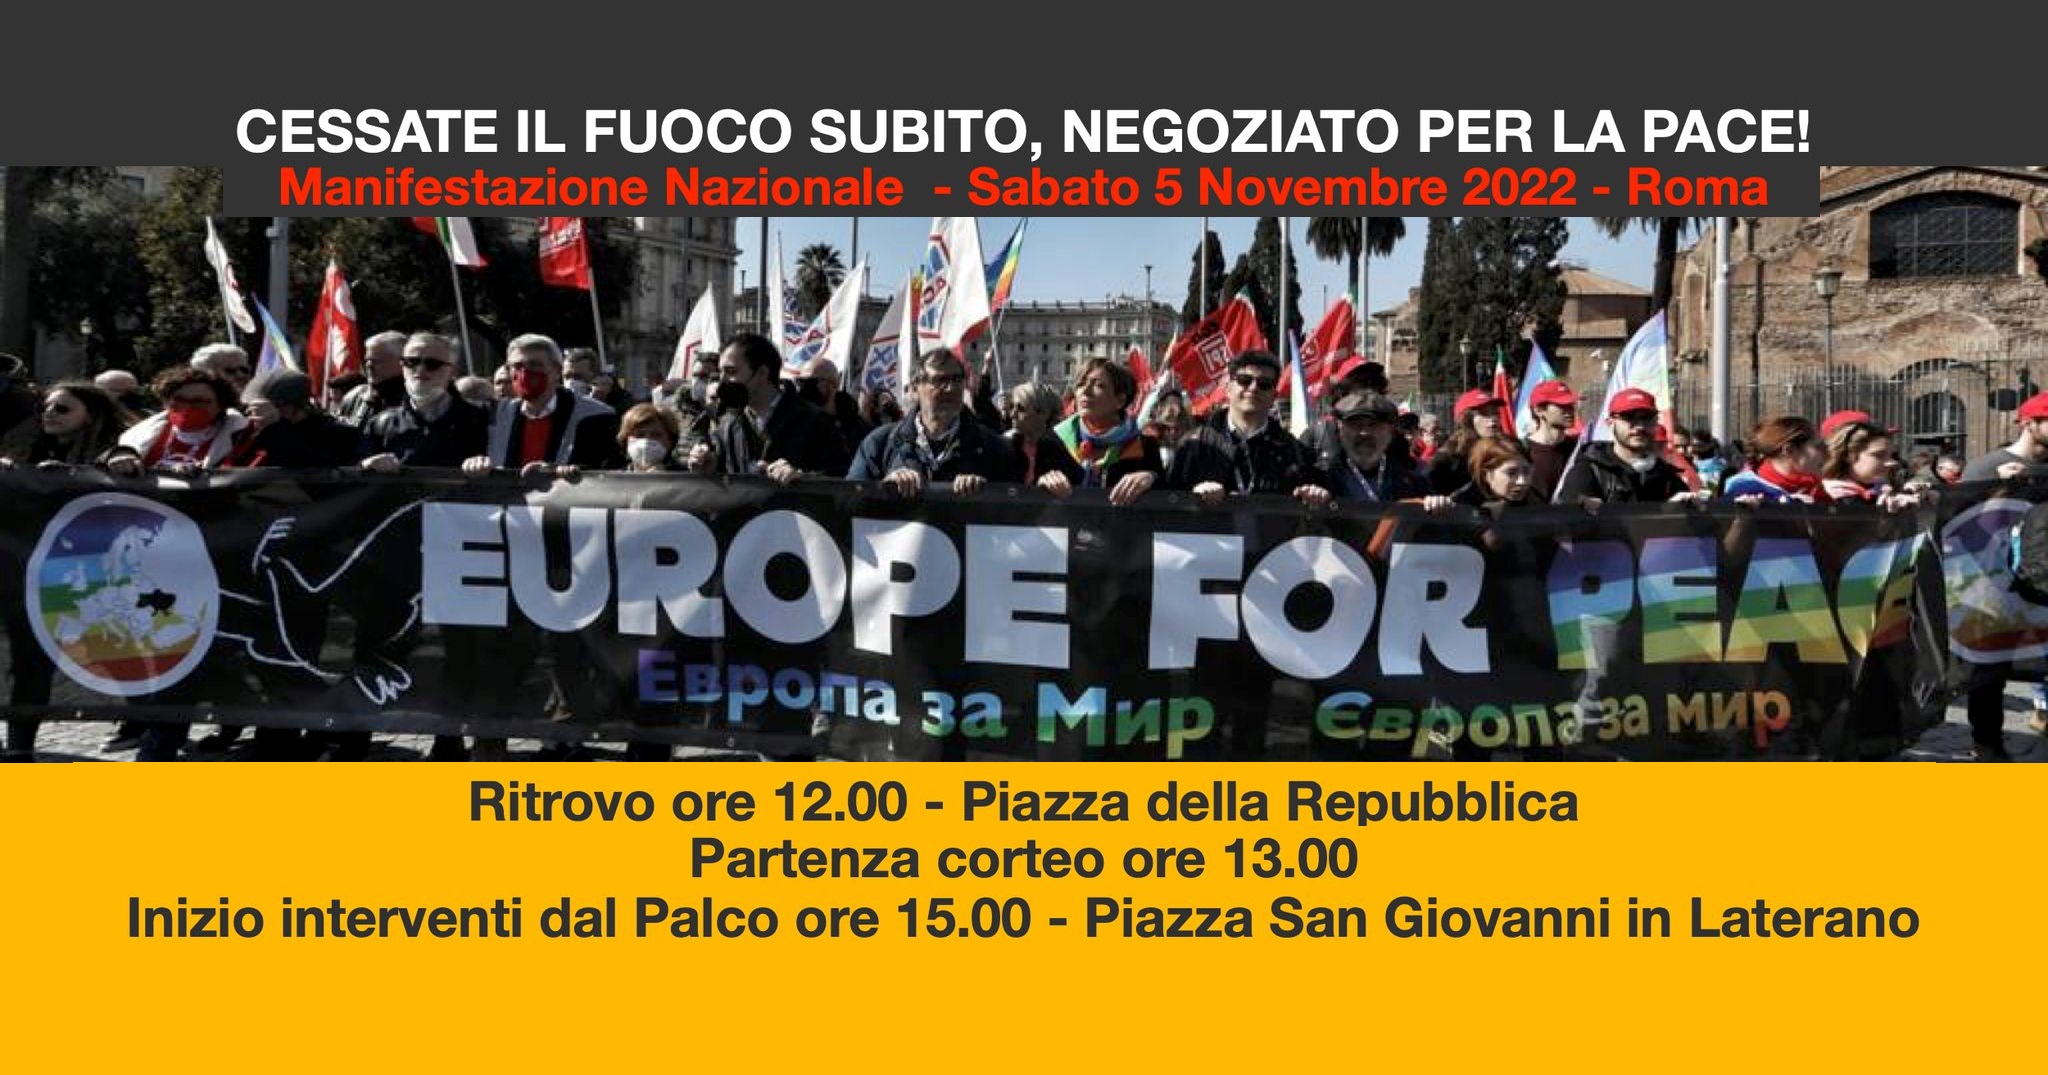 Cessate il fuoco subito, negoziato per la Pace! Manifestazione Nazionale “Europe For Peace” a Roma